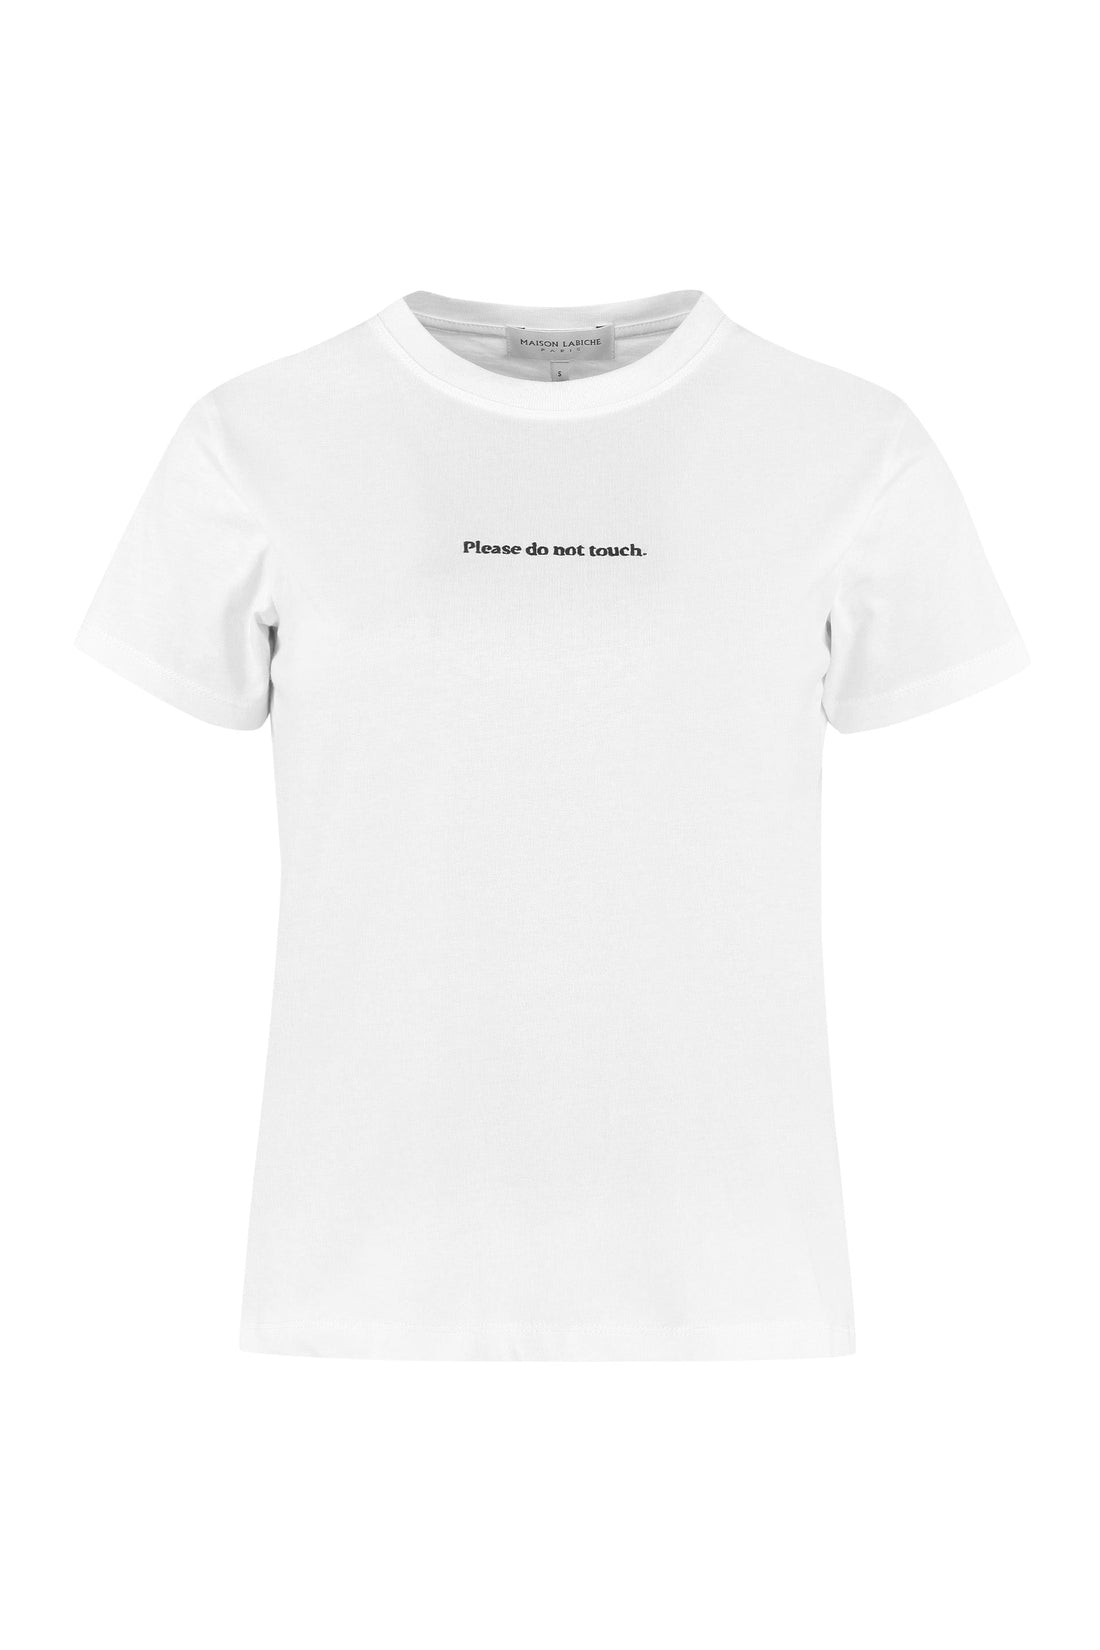 Maison Labiche-OUTLET-SALE-Printed cotton T-shirt-ARCHIVIST